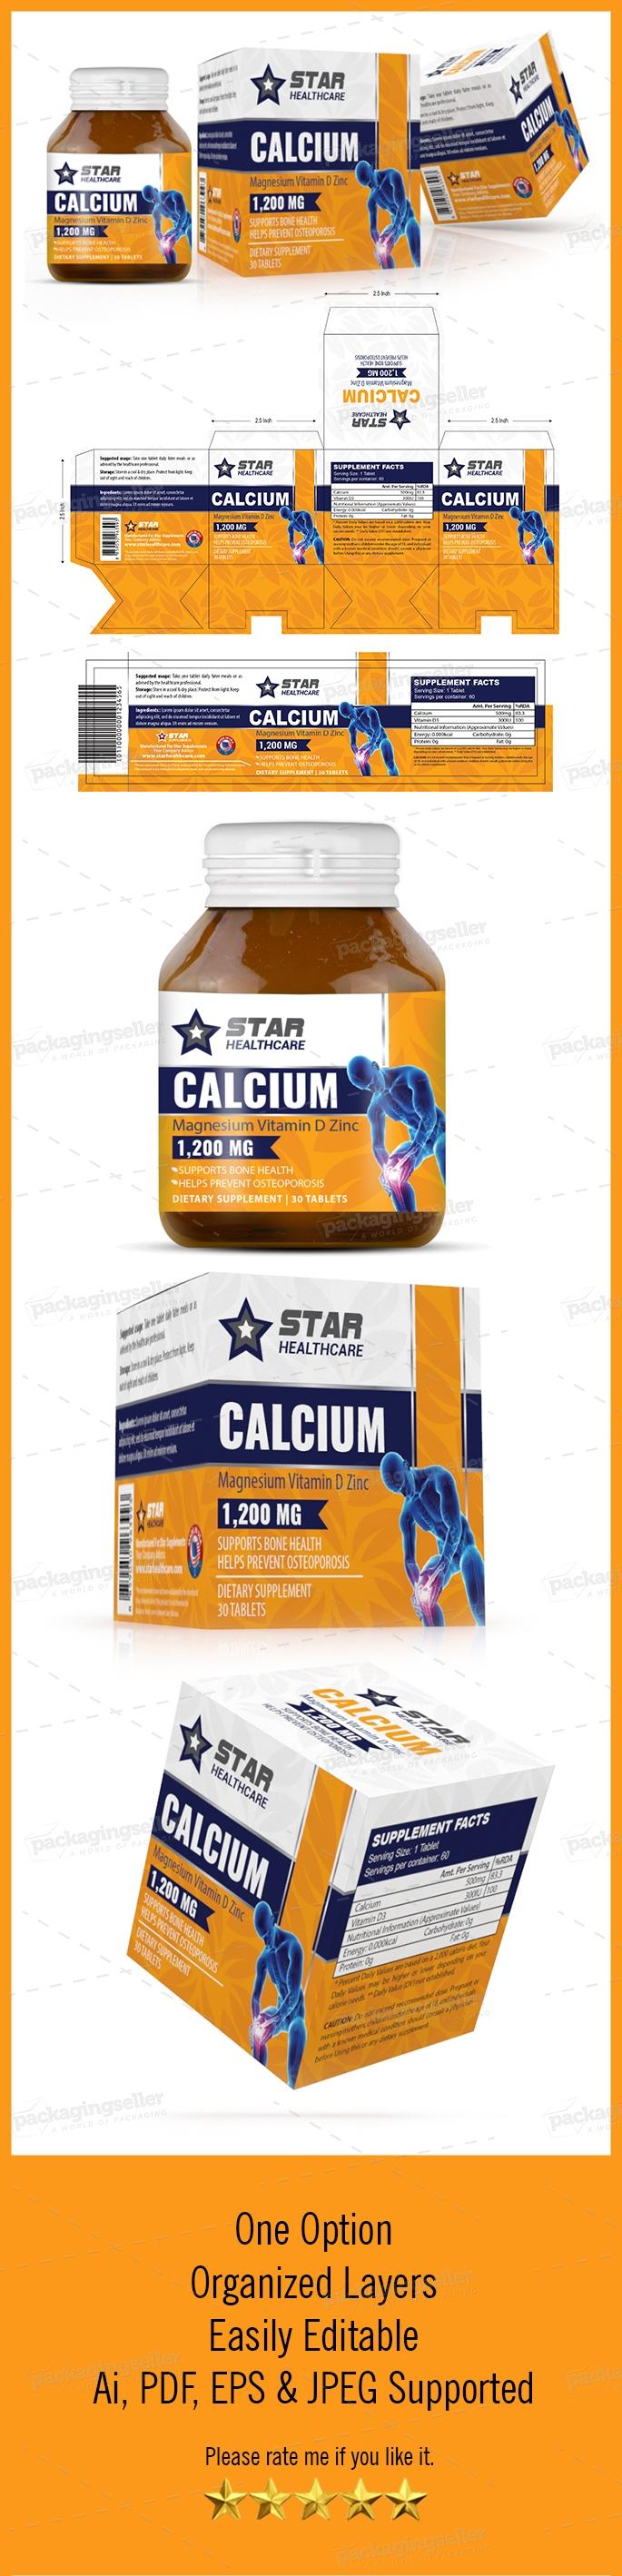 Calcium-Medicine Box Packaging Design Template